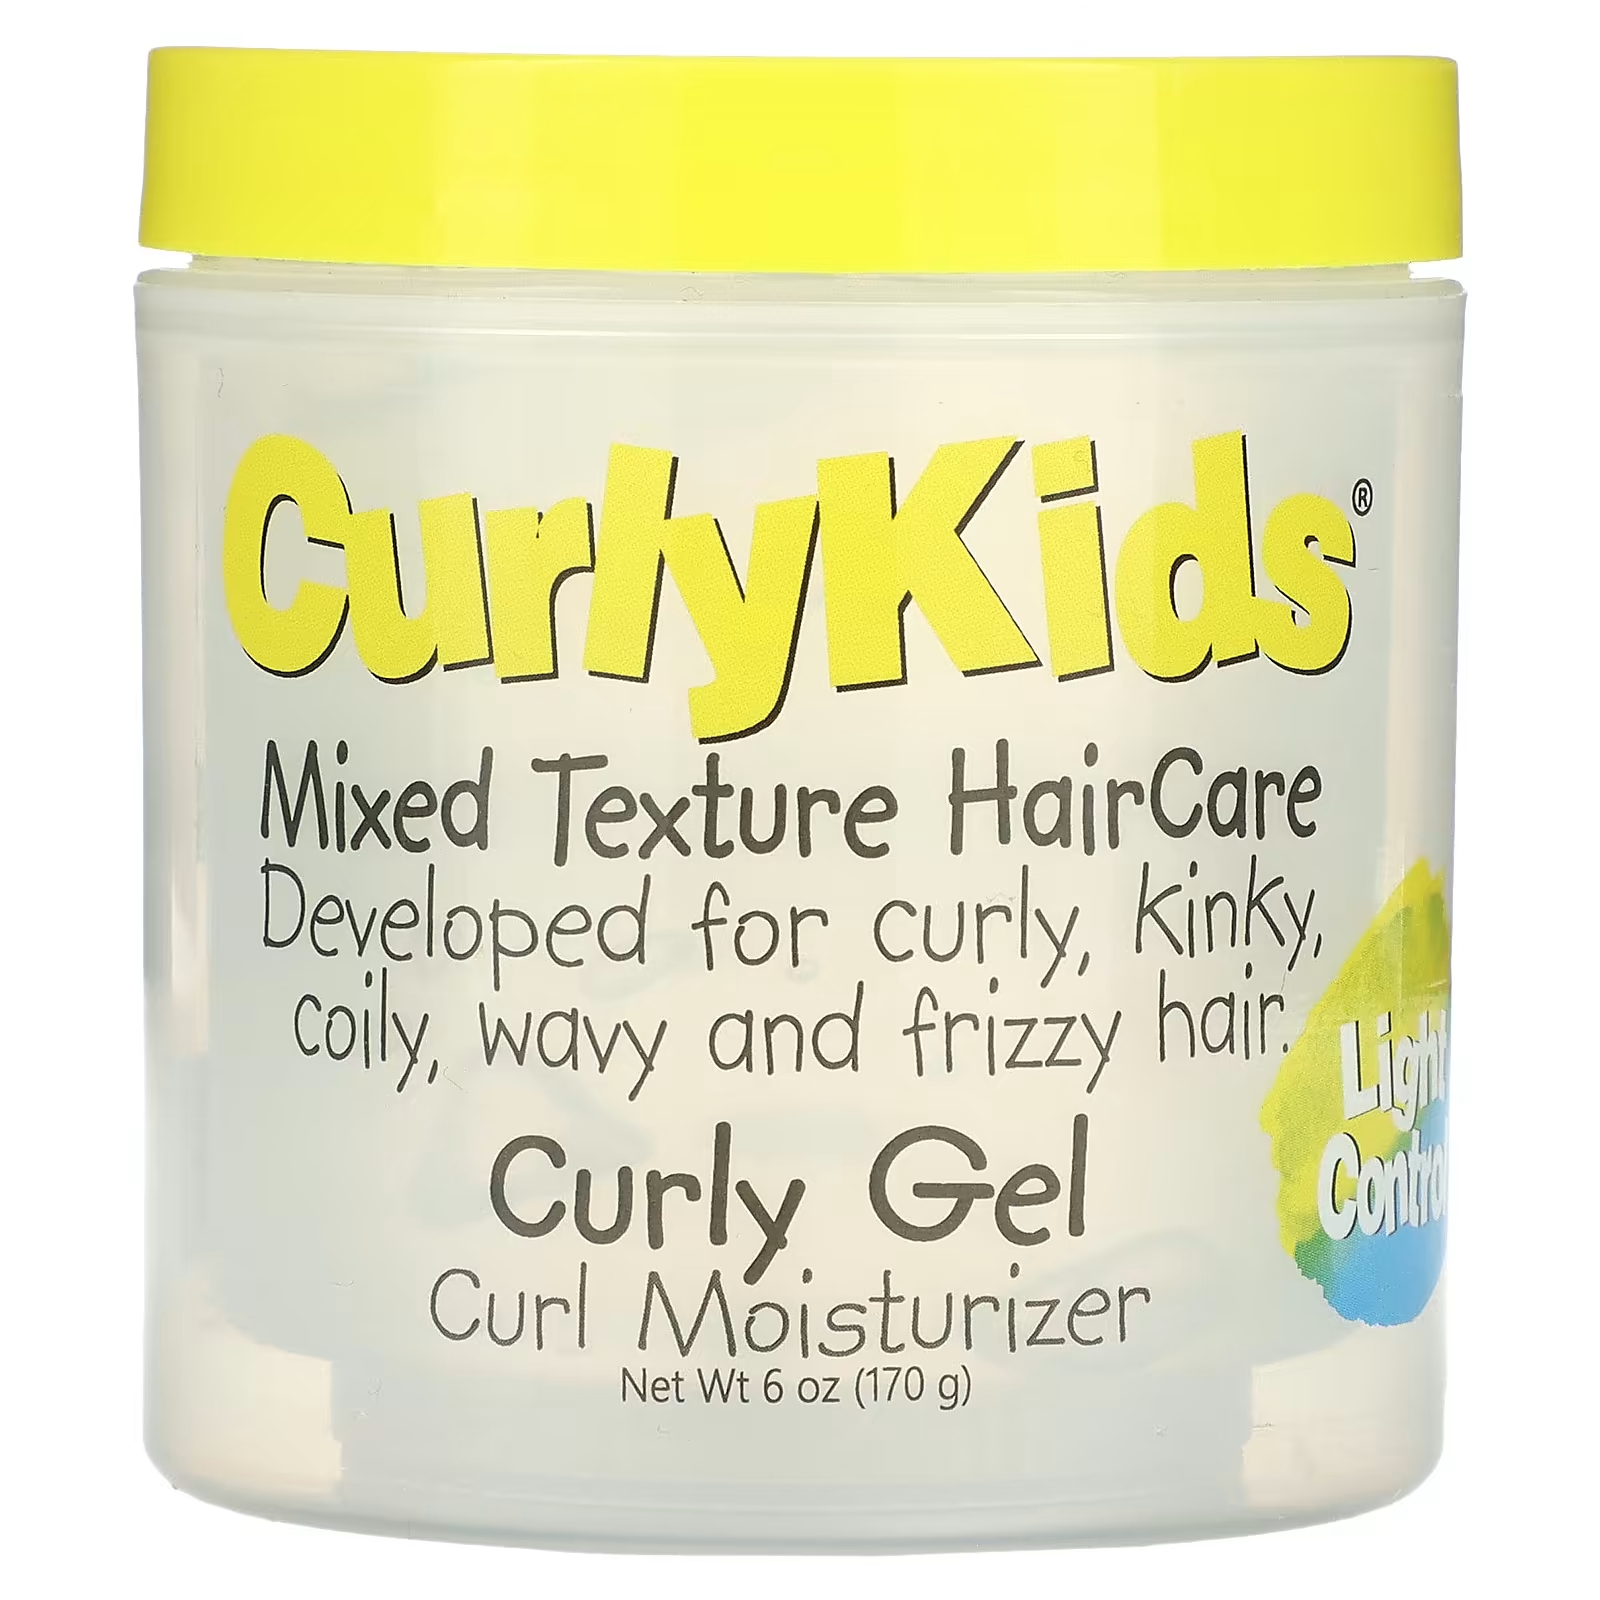 Средство для ухода за волосами CurlyKids со смешанной текстурой средство для ухода за волосами curlykids со смешанной текстурой